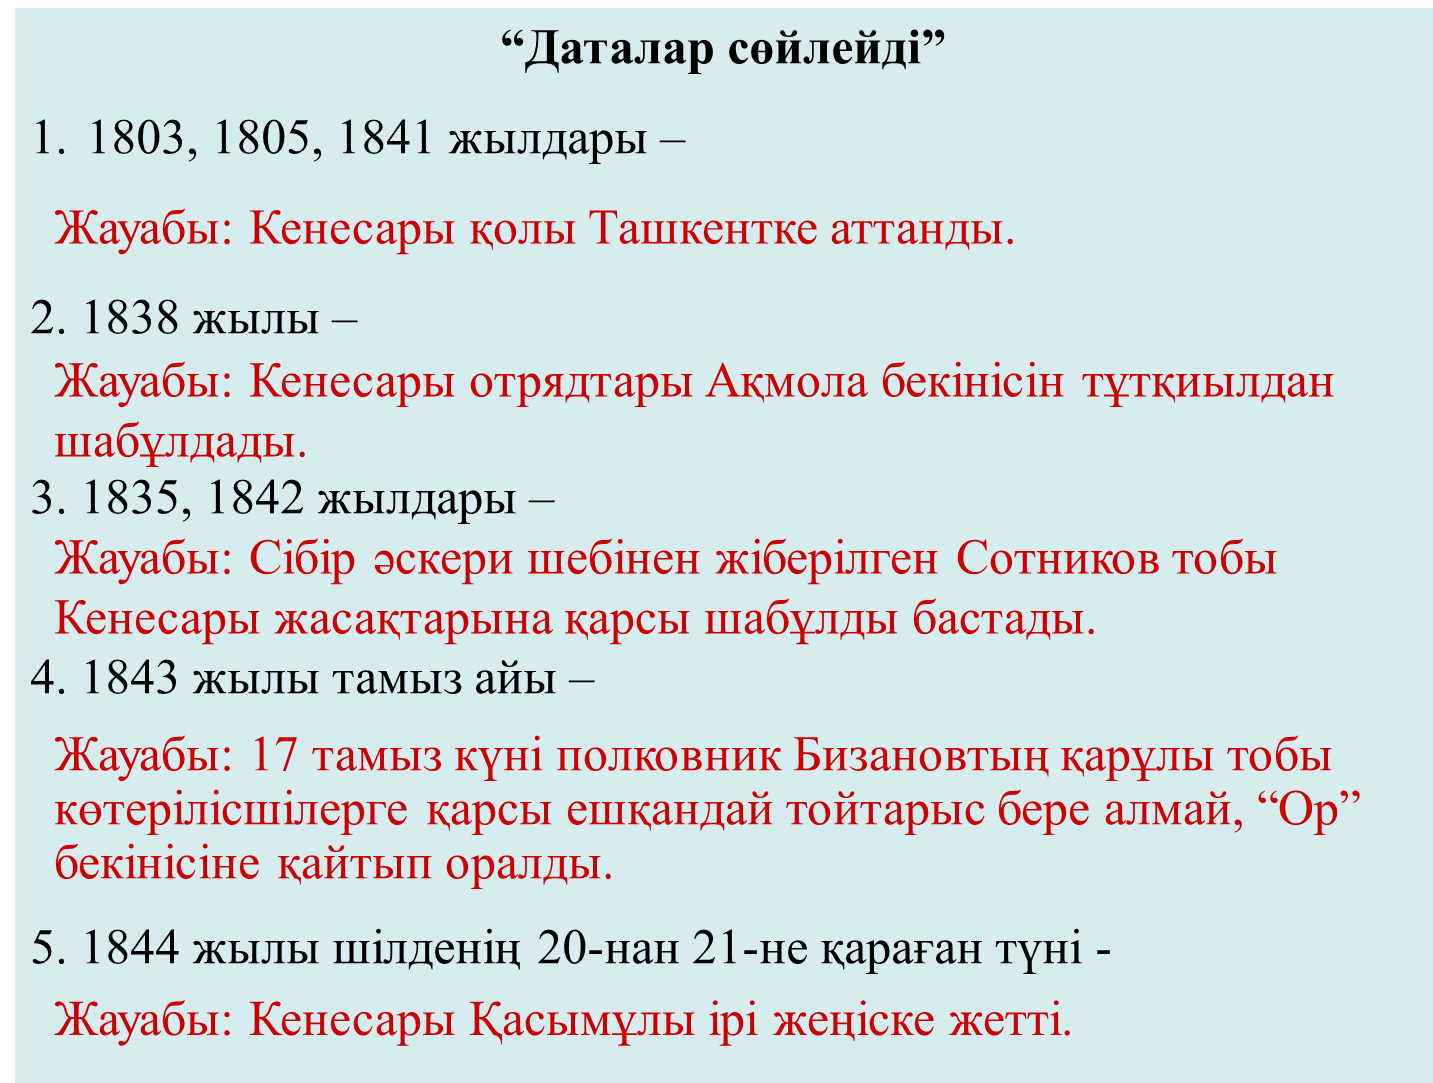 1837-1847 жылдардағы Кенесары Қасымұлы бастаған көтеріліс.